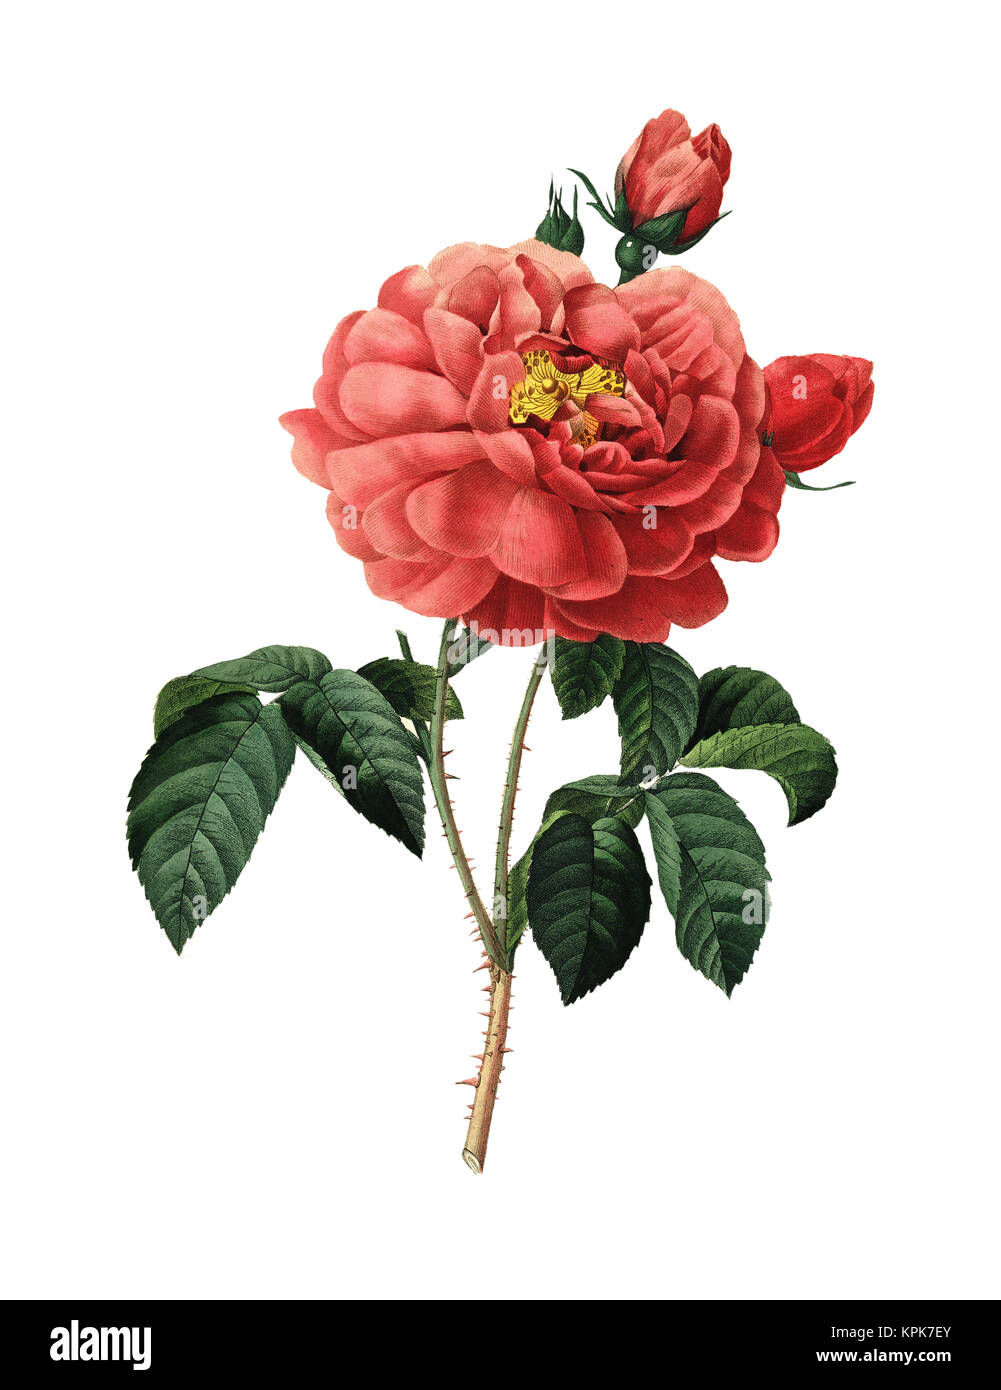 19ème siècle Illustration d'une duchesse d'Orléans Rose. Gravure par Pierre-Joseph Redoute. Publié dans Choix des Plus Belles fleurs, Paris (1827). Banque D'Images